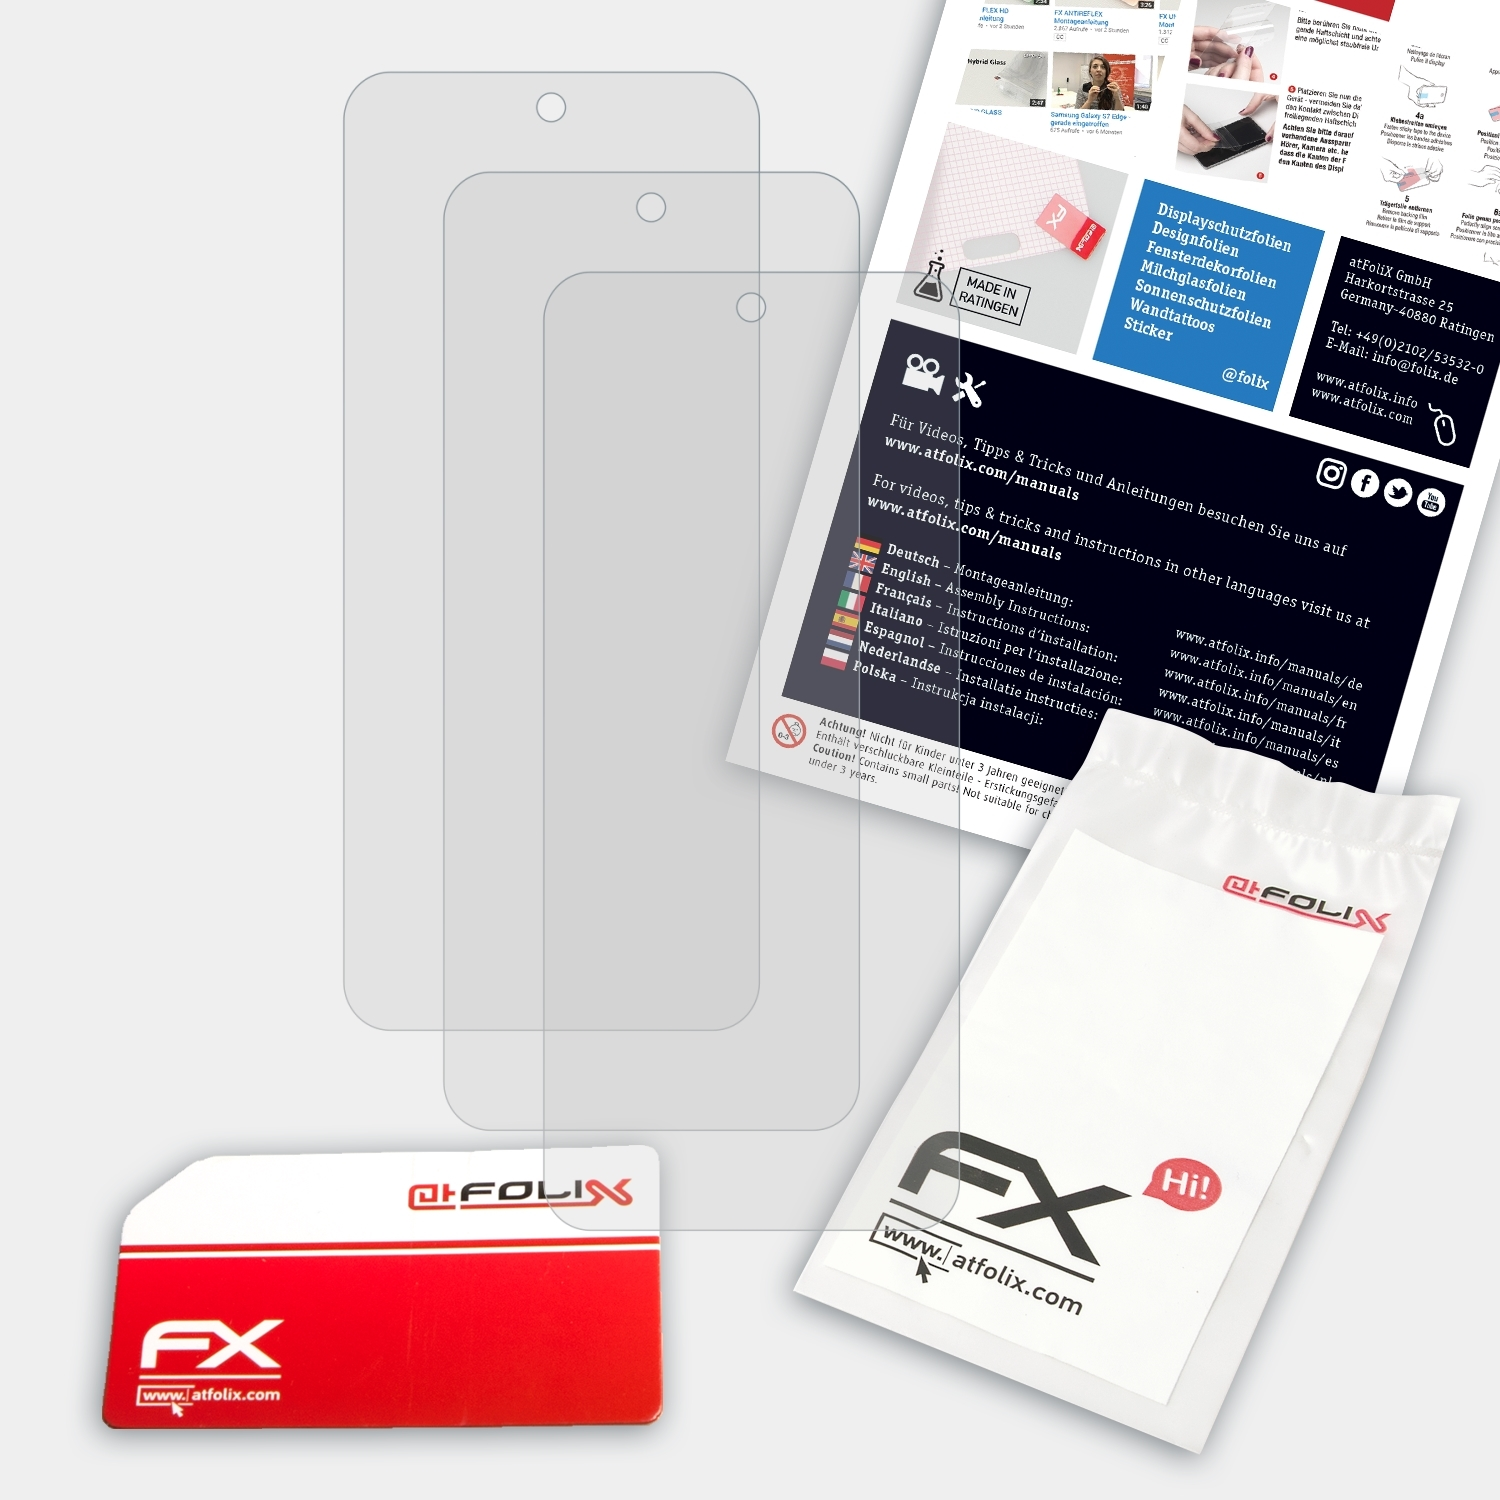 FX-Antireflex Motorola Displayschutz(für 3x Moto E30) ATFOLIX